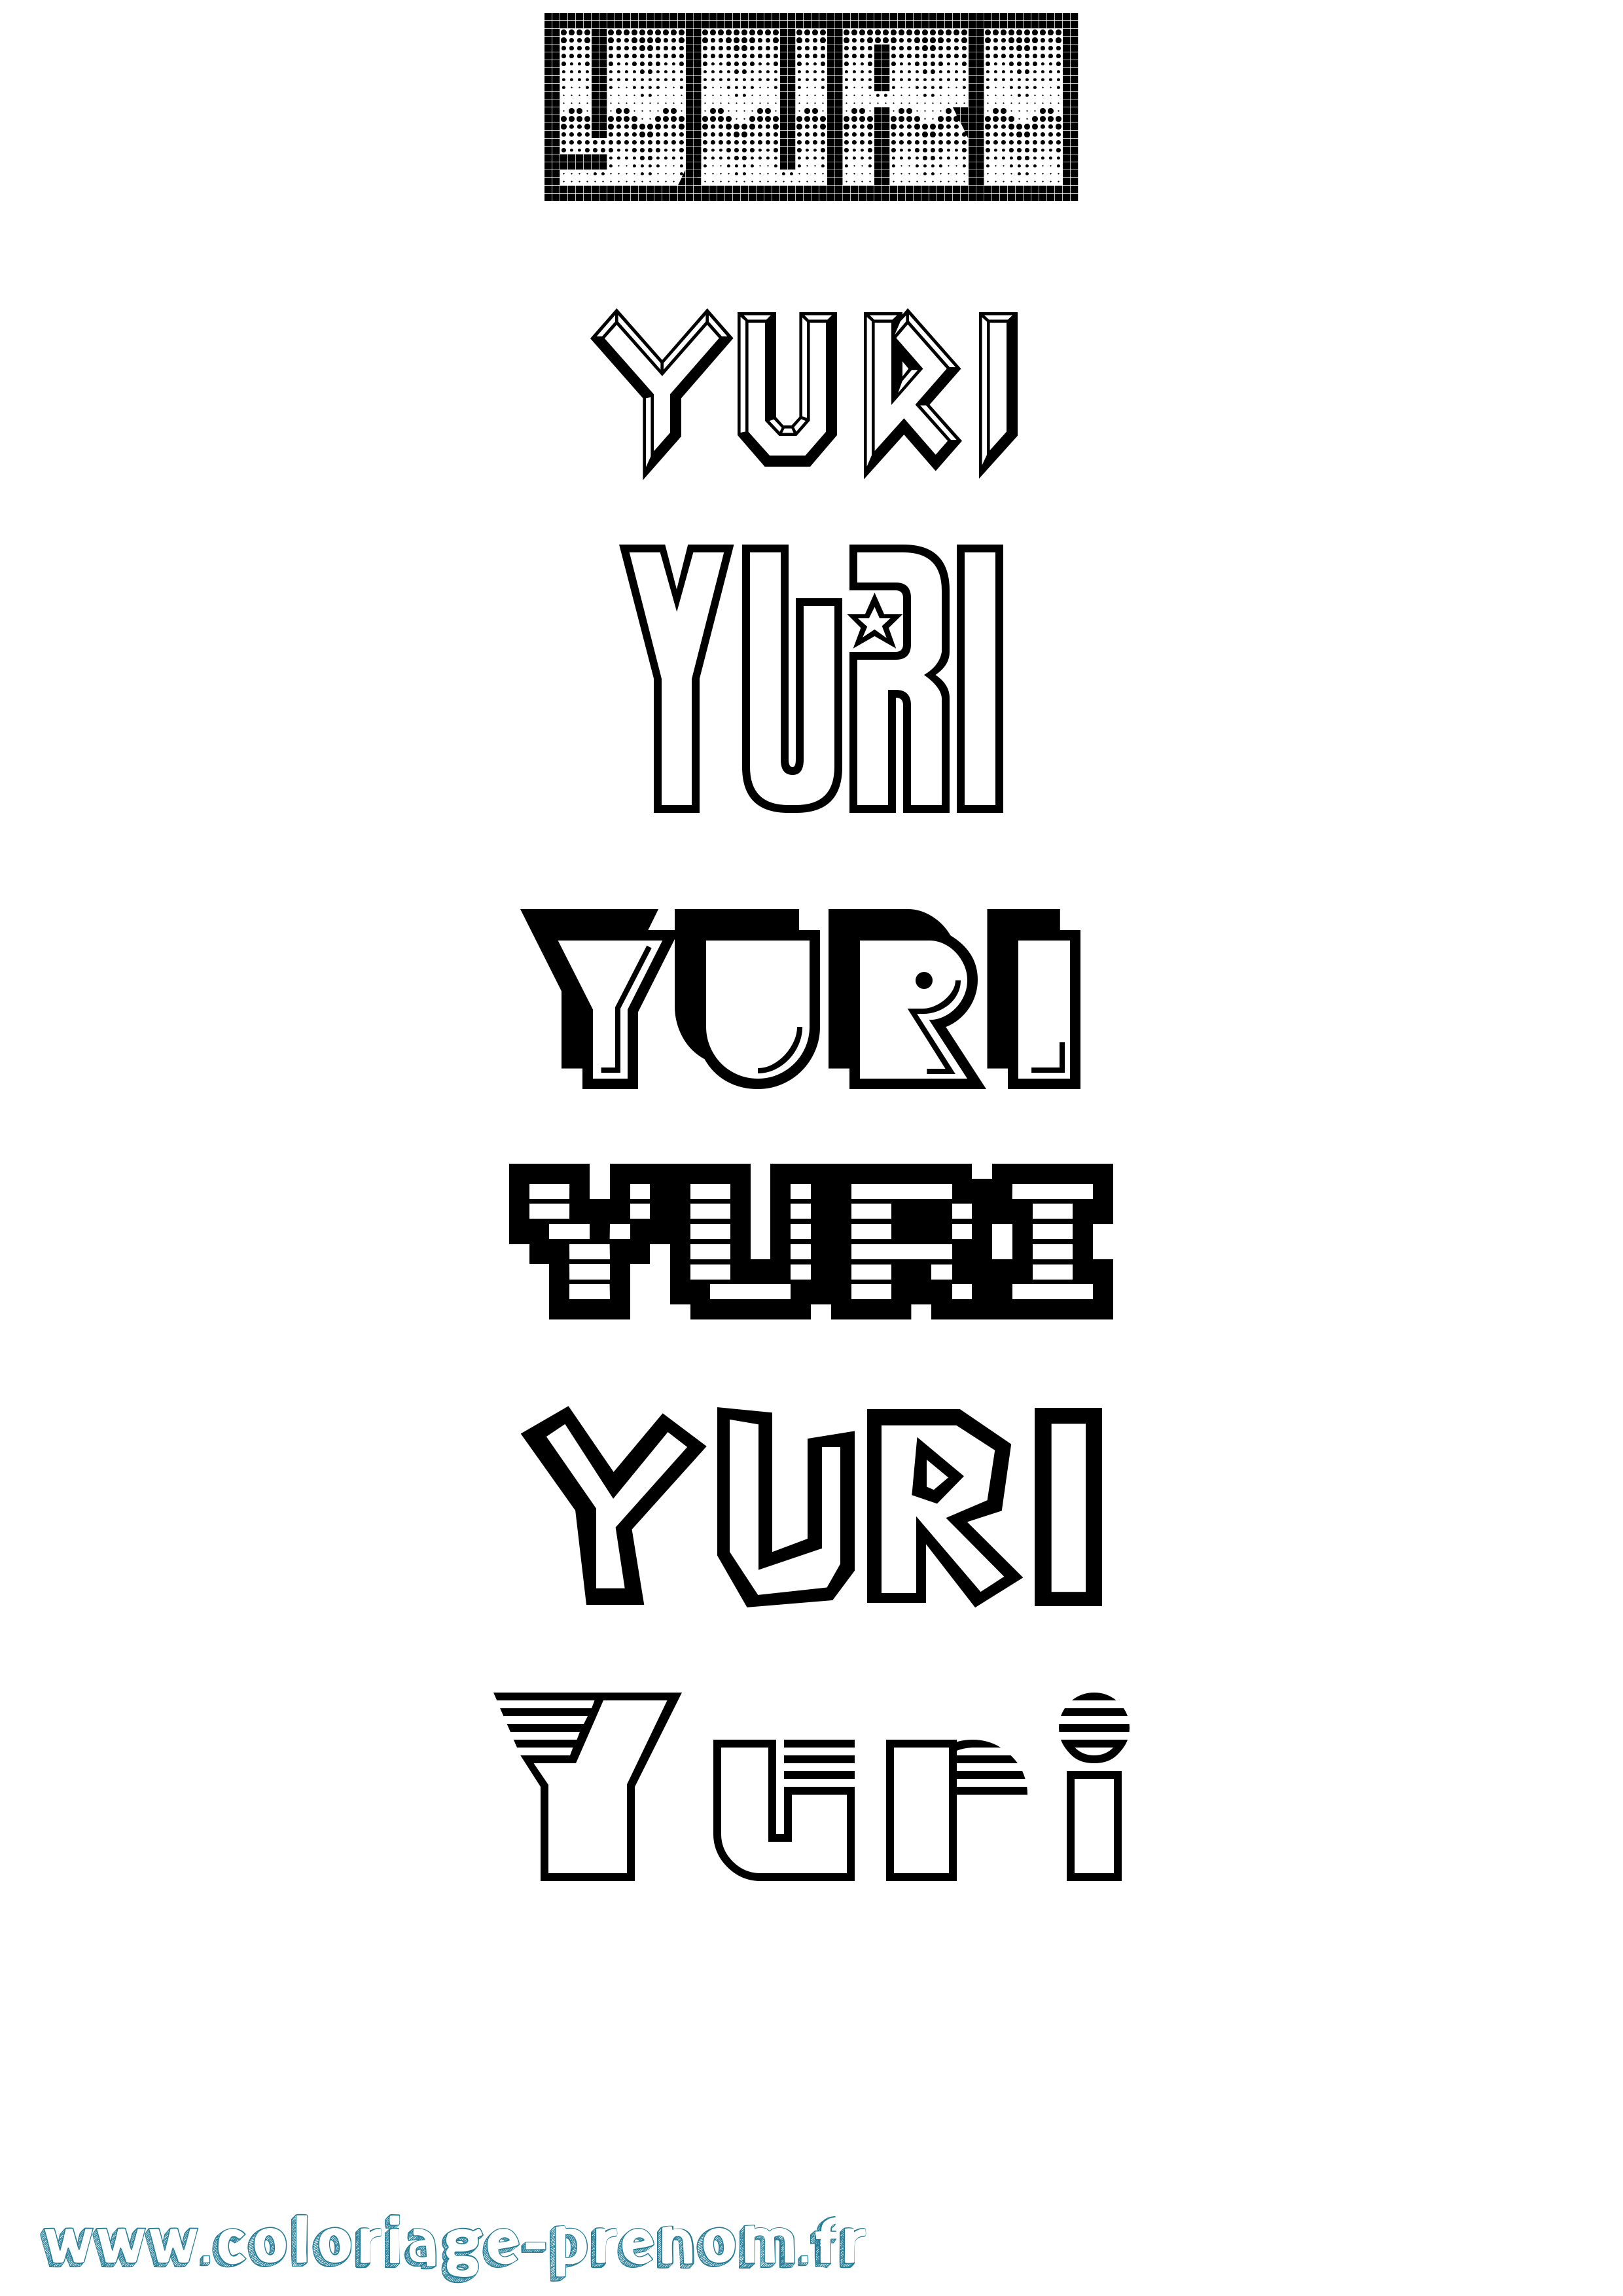 Coloriage prénom Yuri